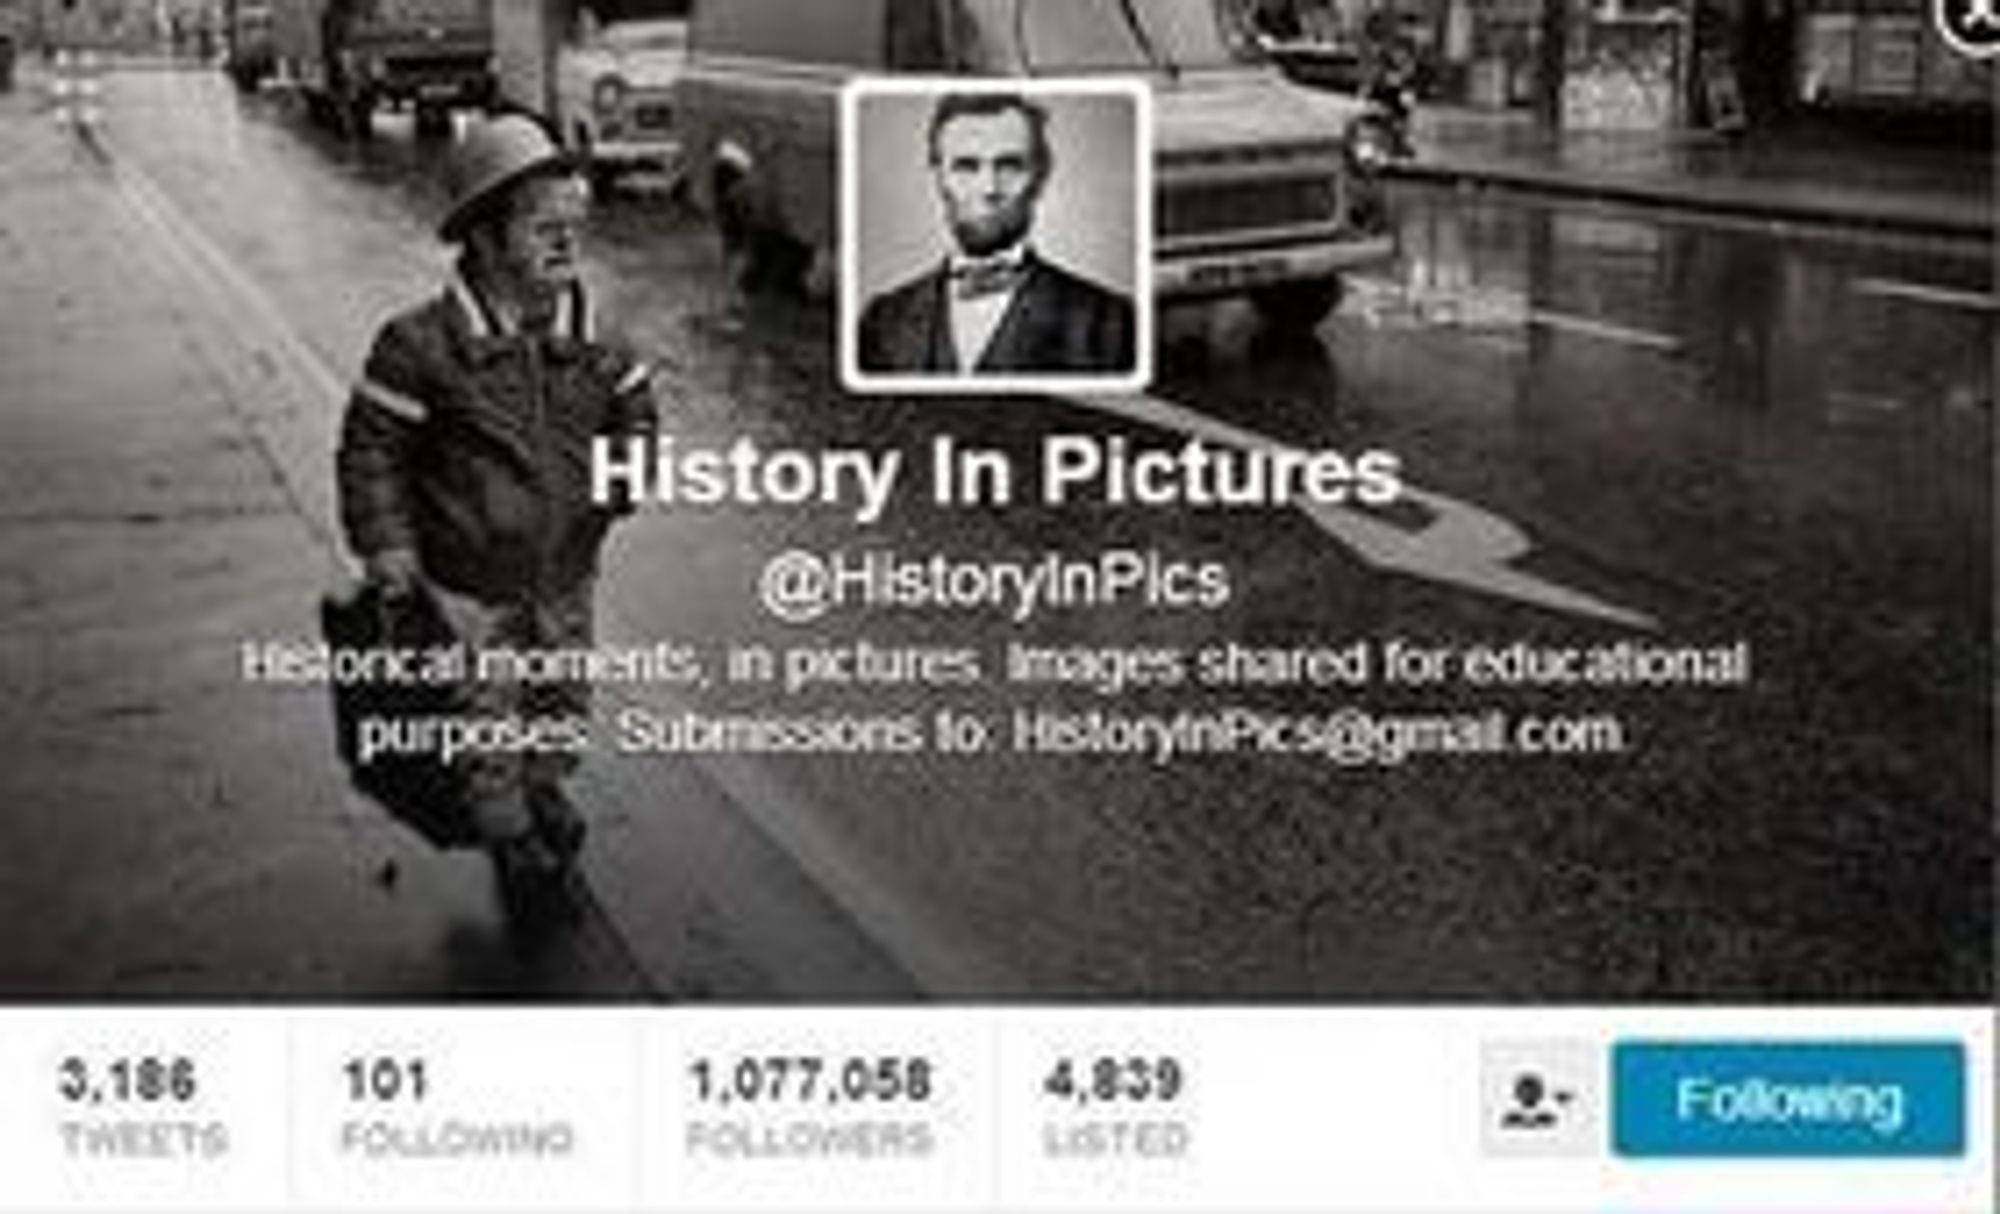 History In Pictures-kontoen ble opprettet i juli i fjor, og har passert en million følgere.